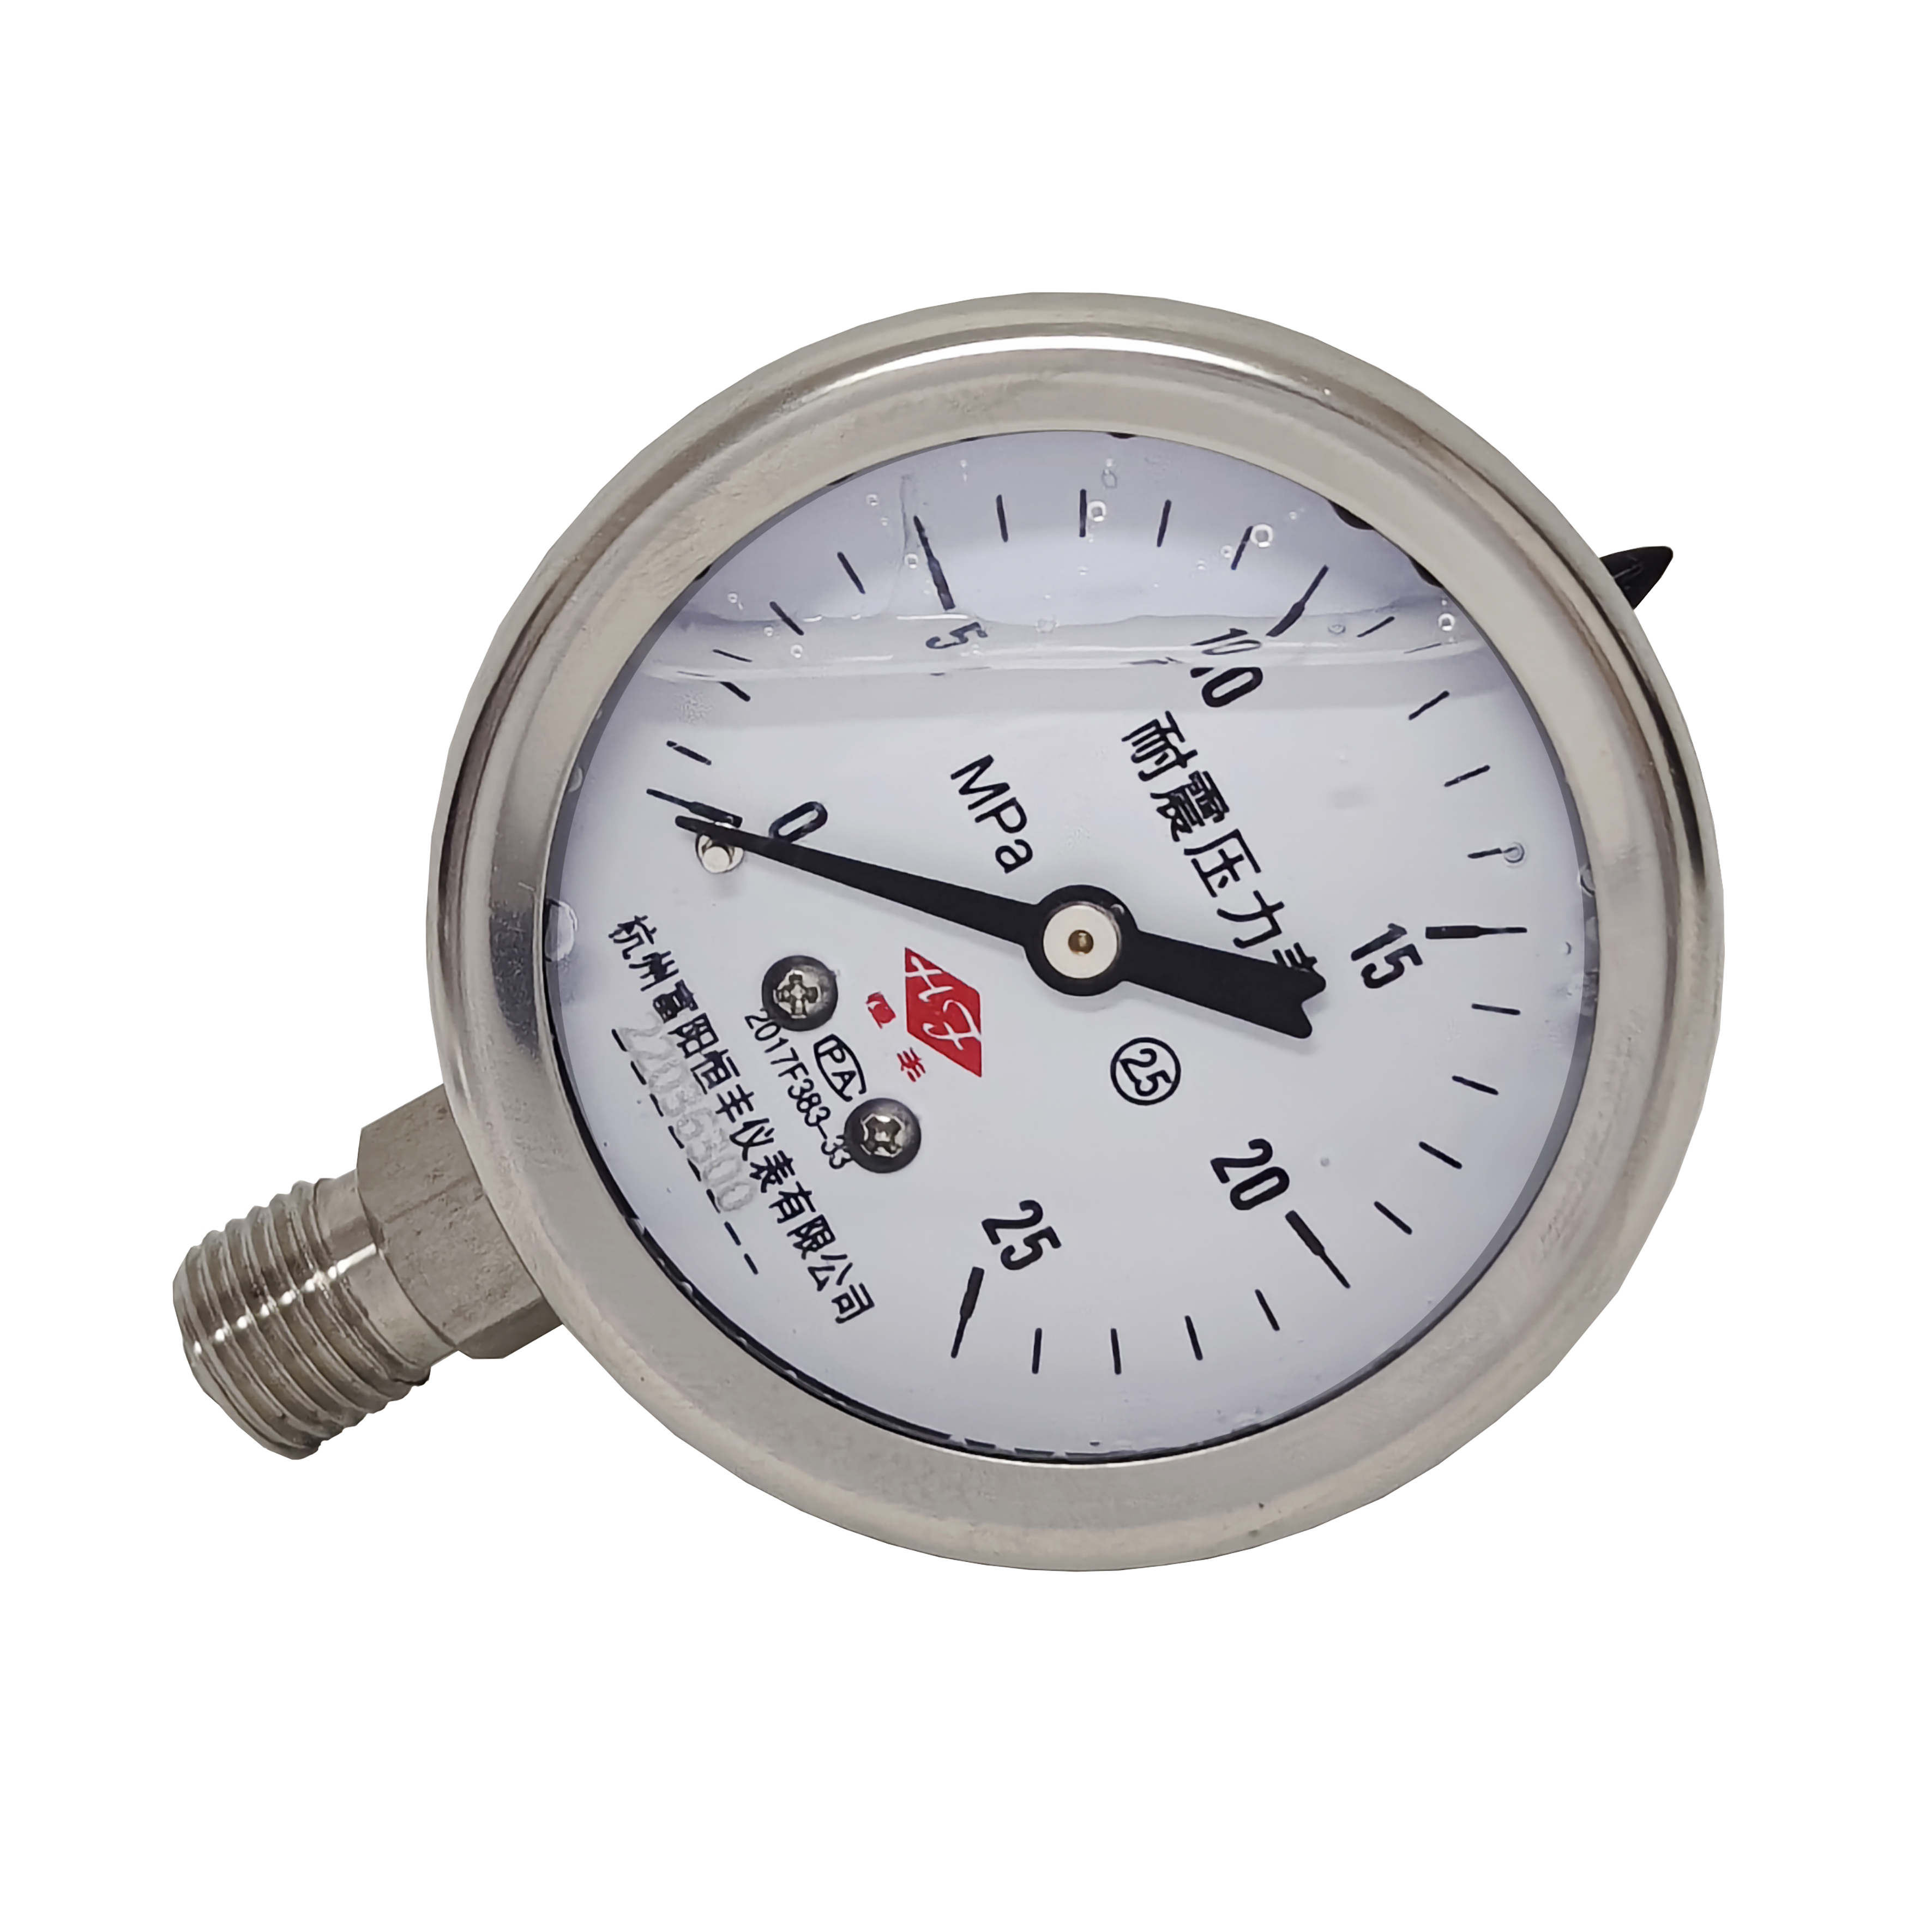 Y60BF stainless steel pressure gauge